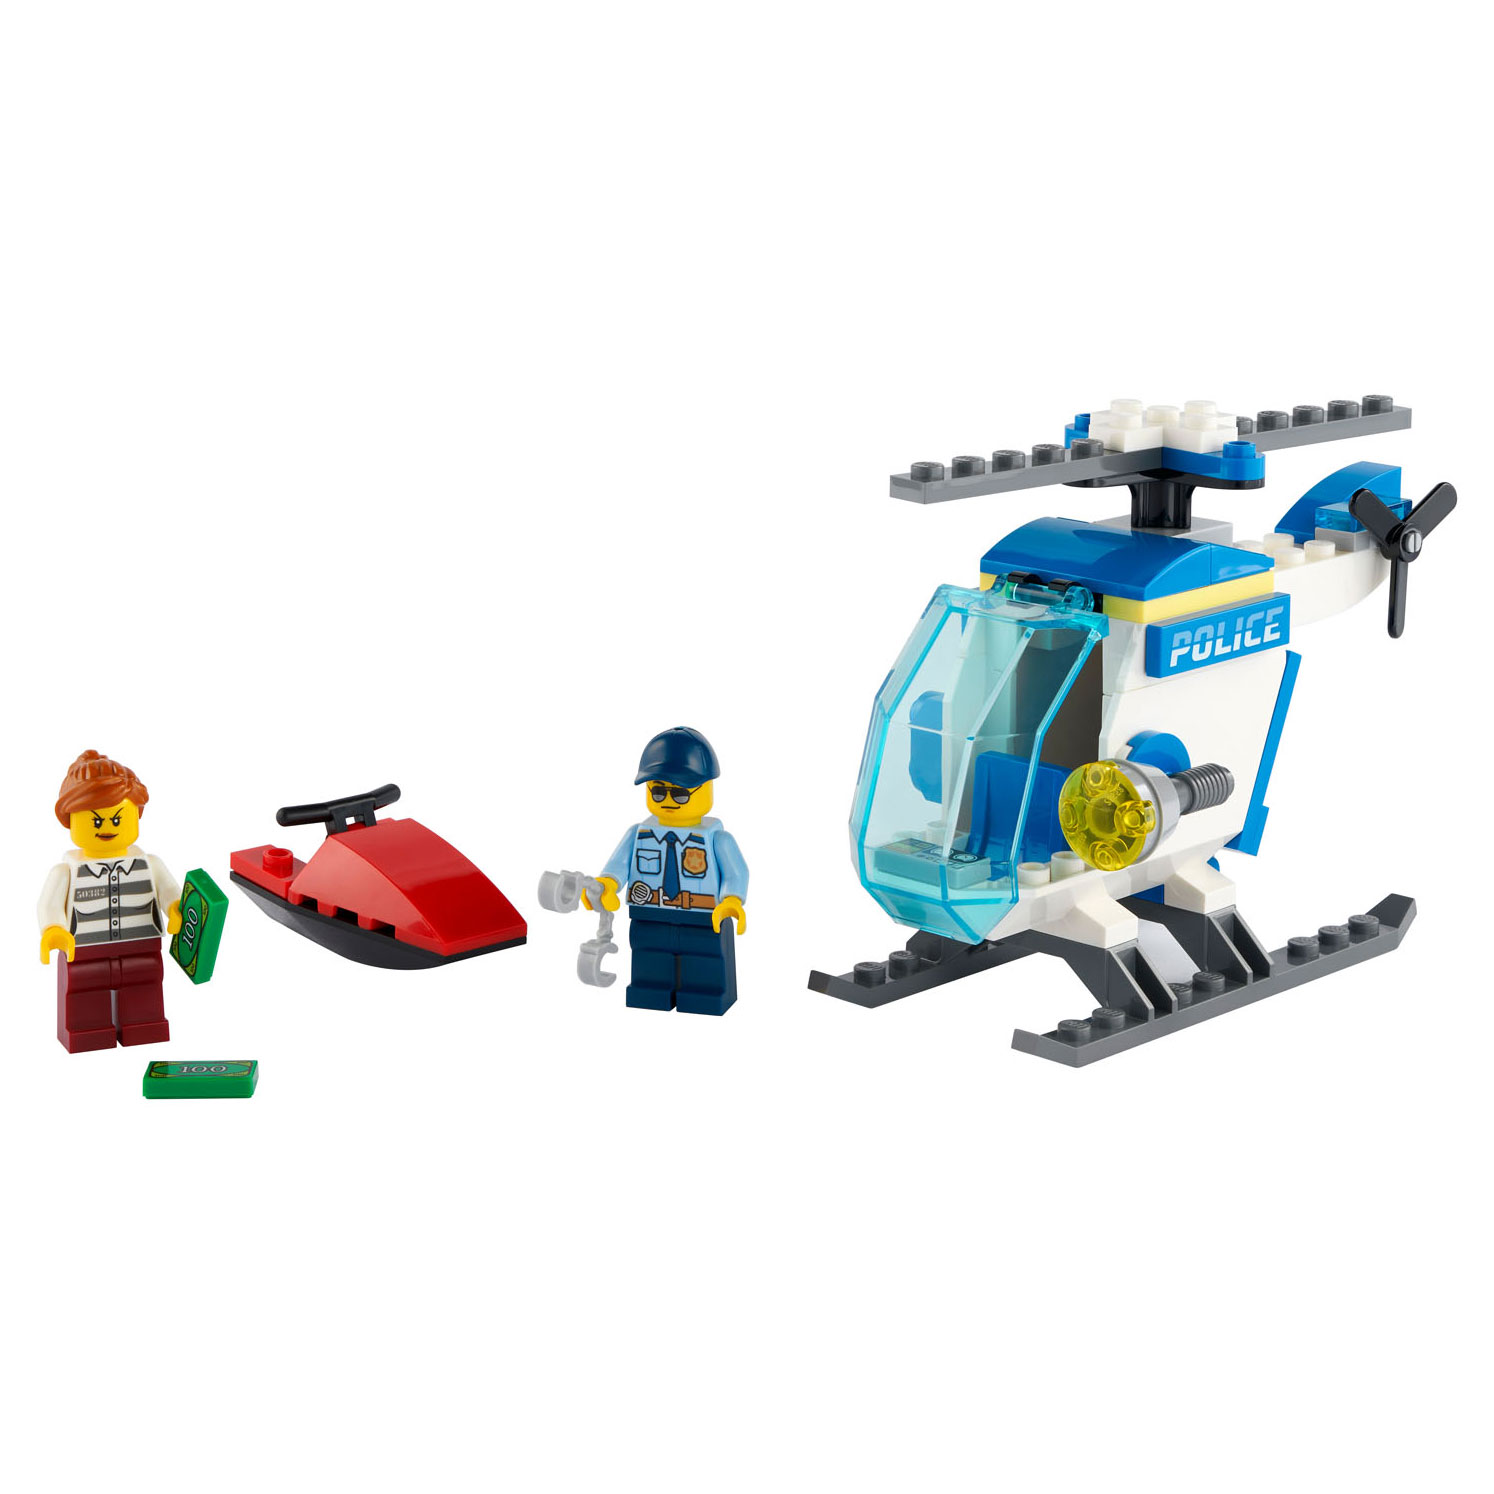 LEGO City 60275 Polizeihubschrauber